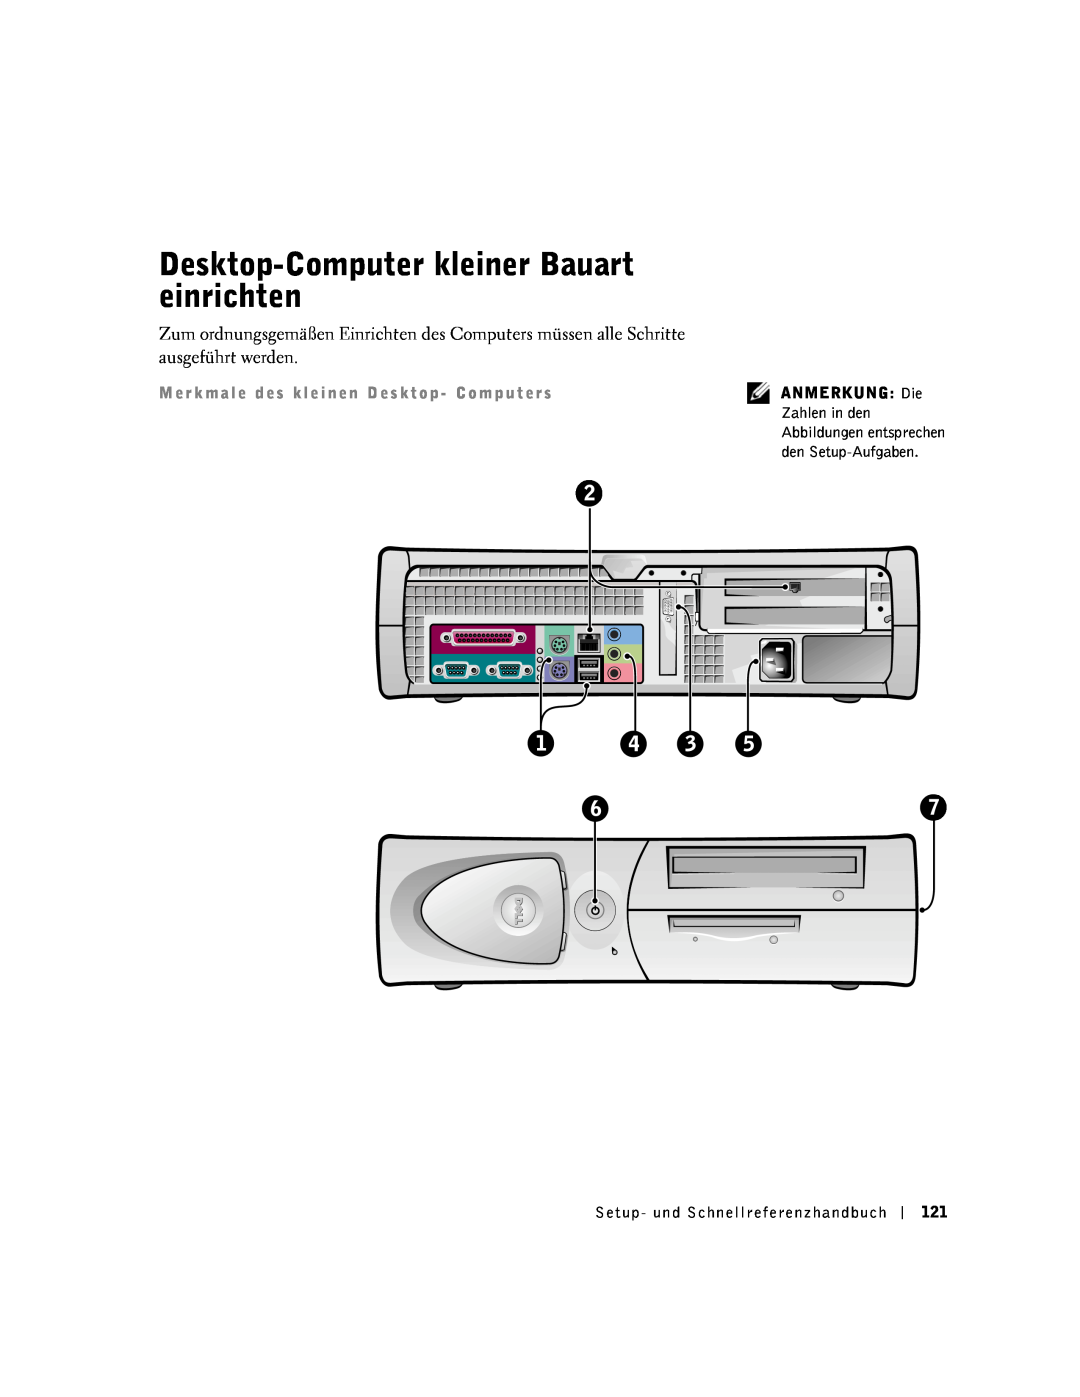 Dell 1G155 manual Desktop-Computer kleiner Bauart einrichten, Abbildungen entsprechen 